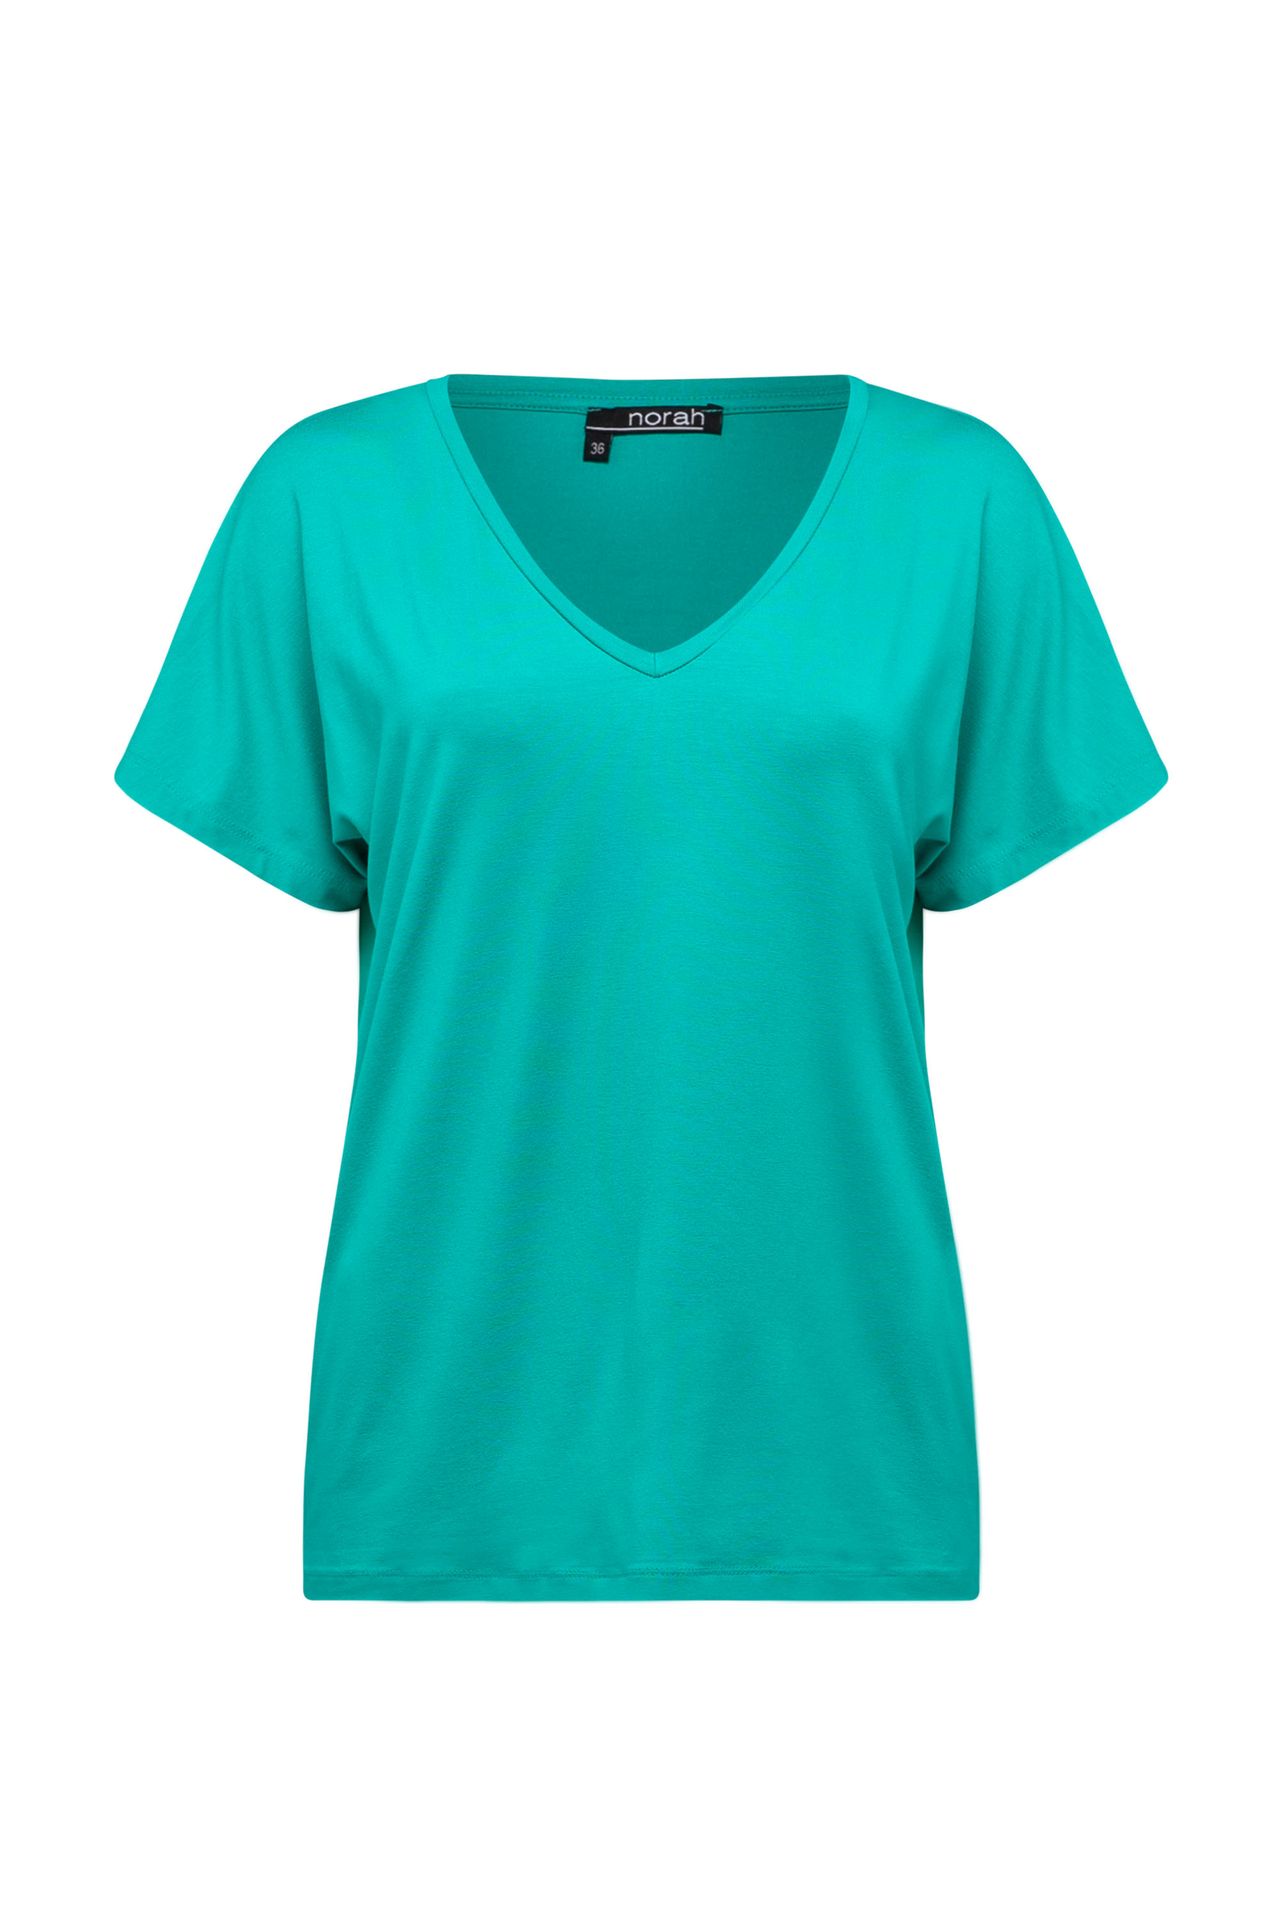 Norah Shirt Maral aqua jade 208968-574